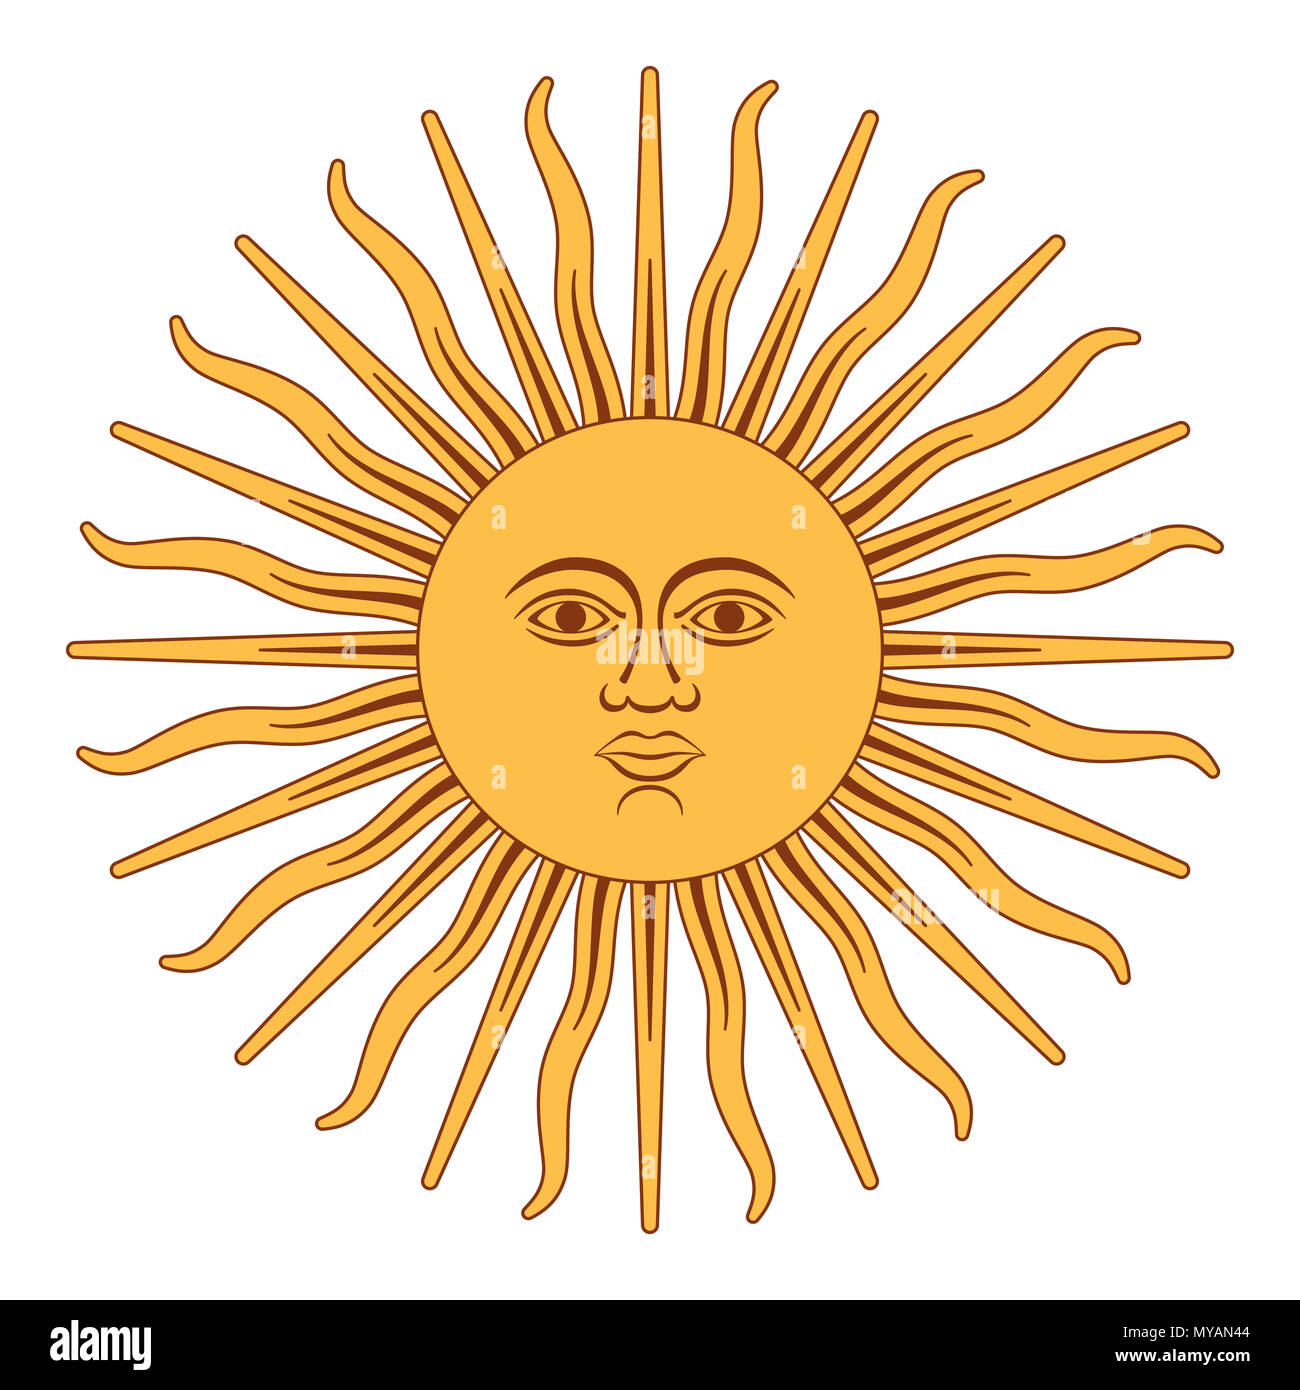 Sol de Mayo, español Sol de Mayo, un emblema nacional de Argentina sobre la bandera del país. Ilustración en blanco. Foto de stock